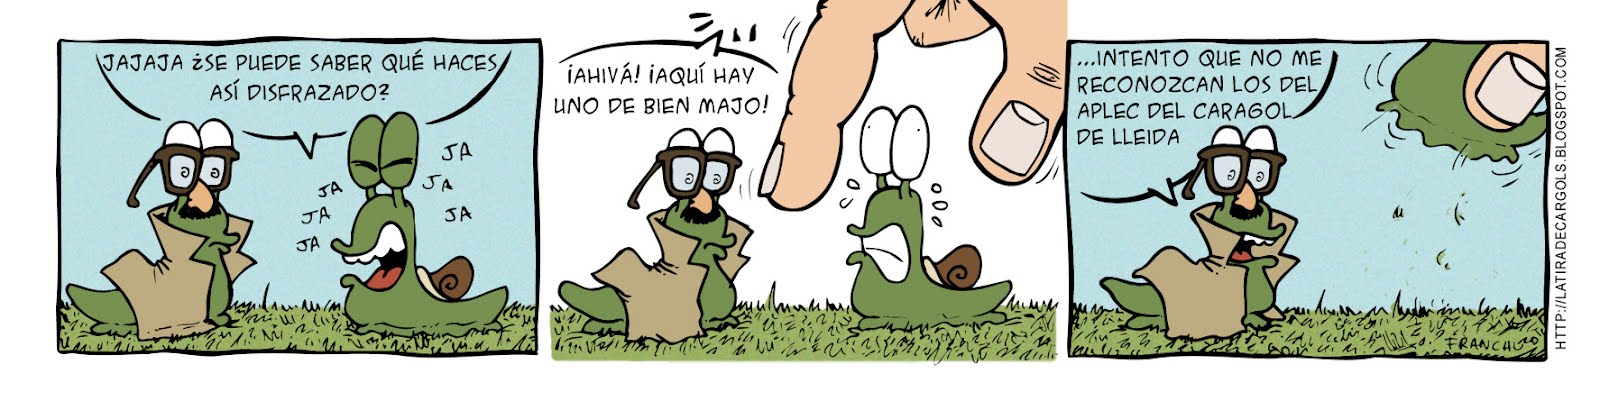 Tira comica 126 del webcomic Cargols del dibujante Franchu